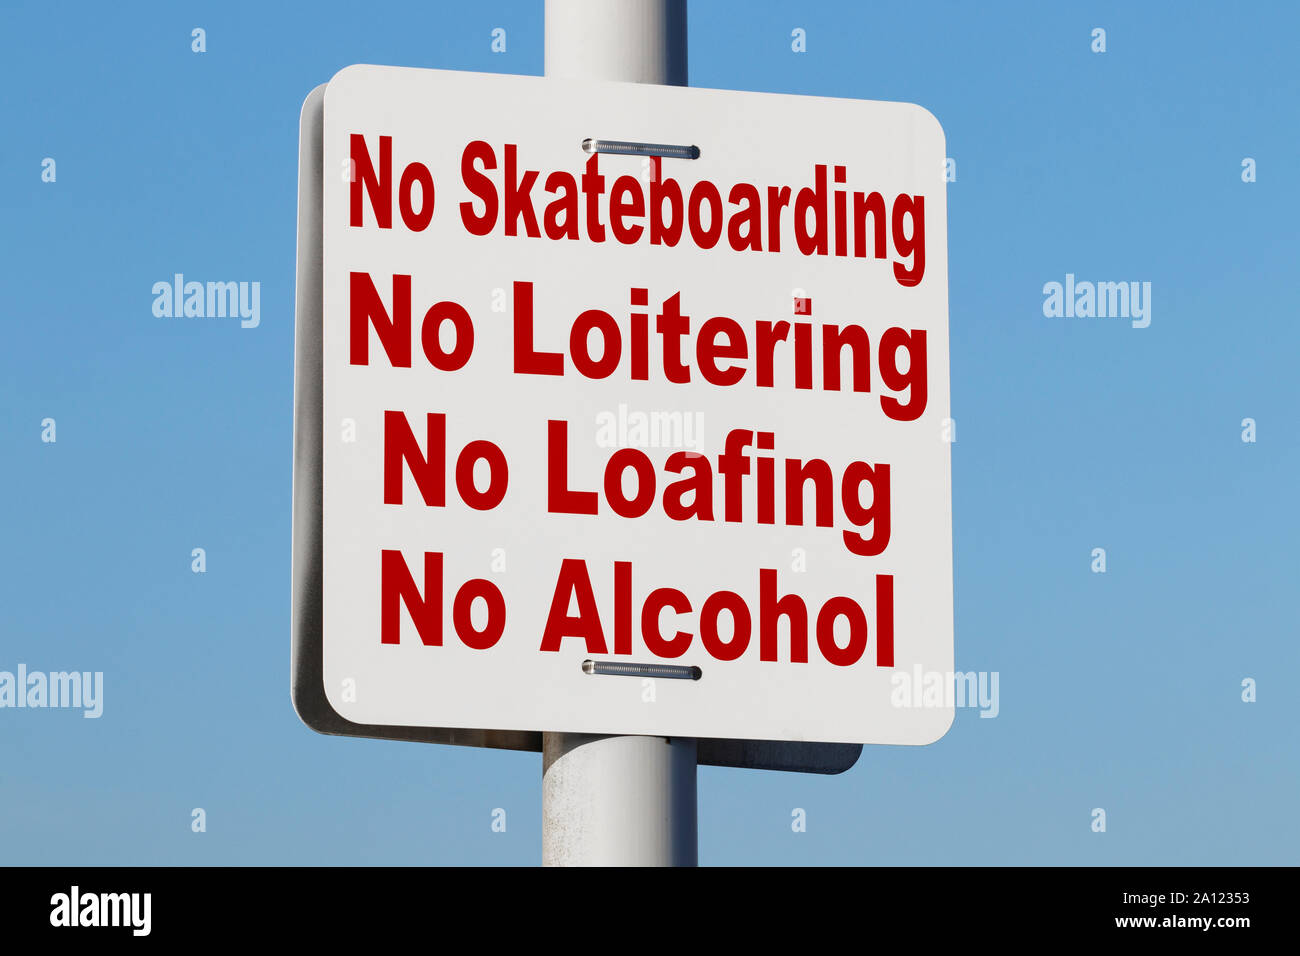 No Skateboarding No Loitering No Loafing No Alcohol Warning sign Stock Photo